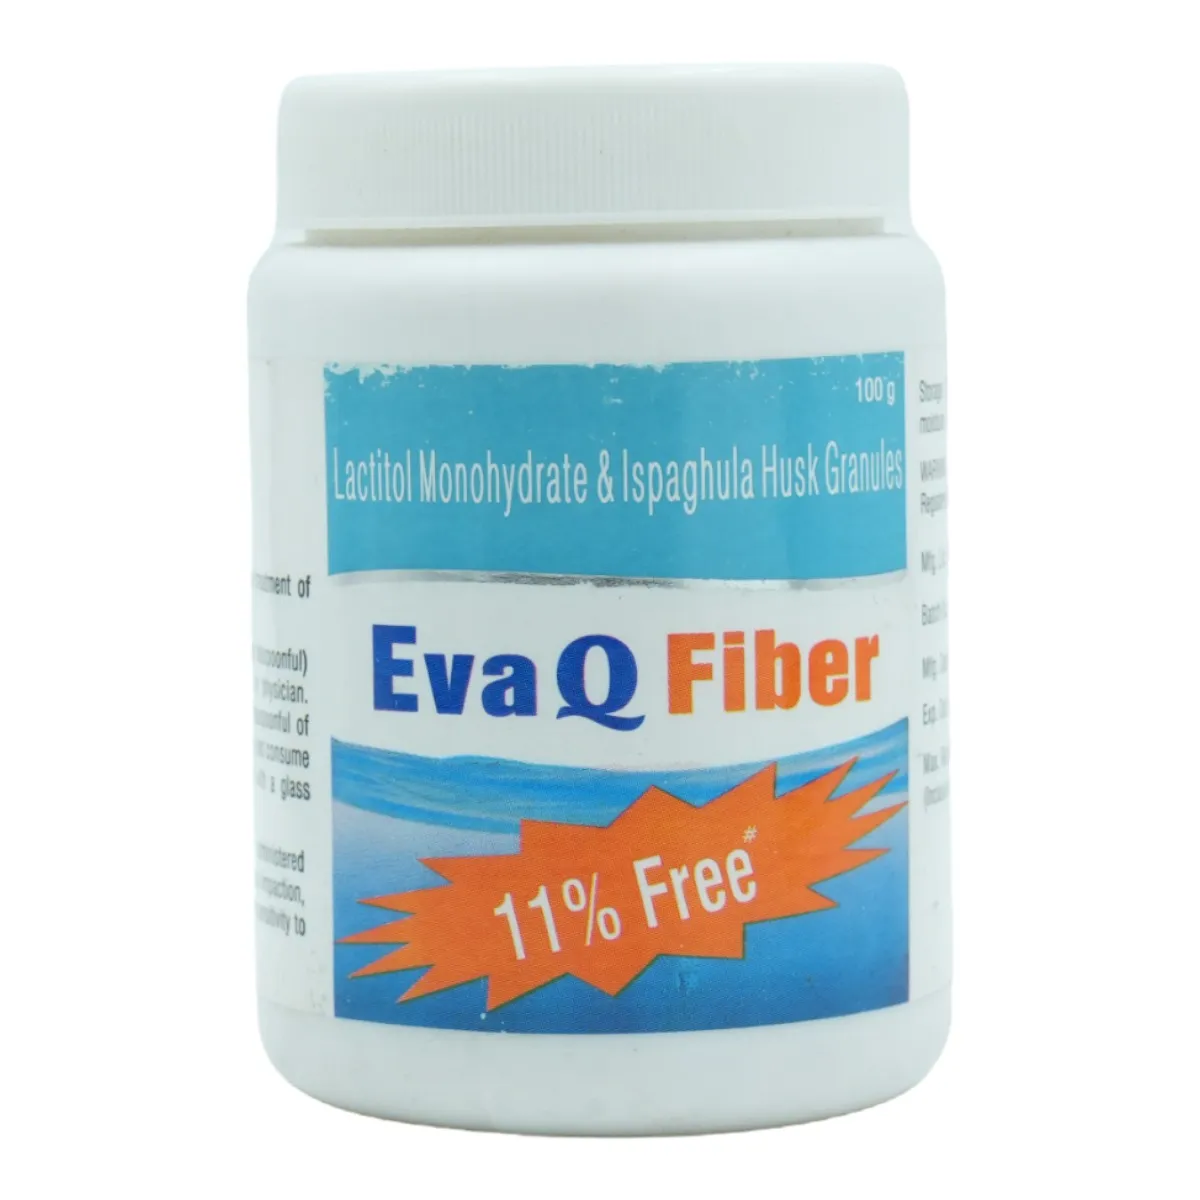 Eva Q Fiber Granules